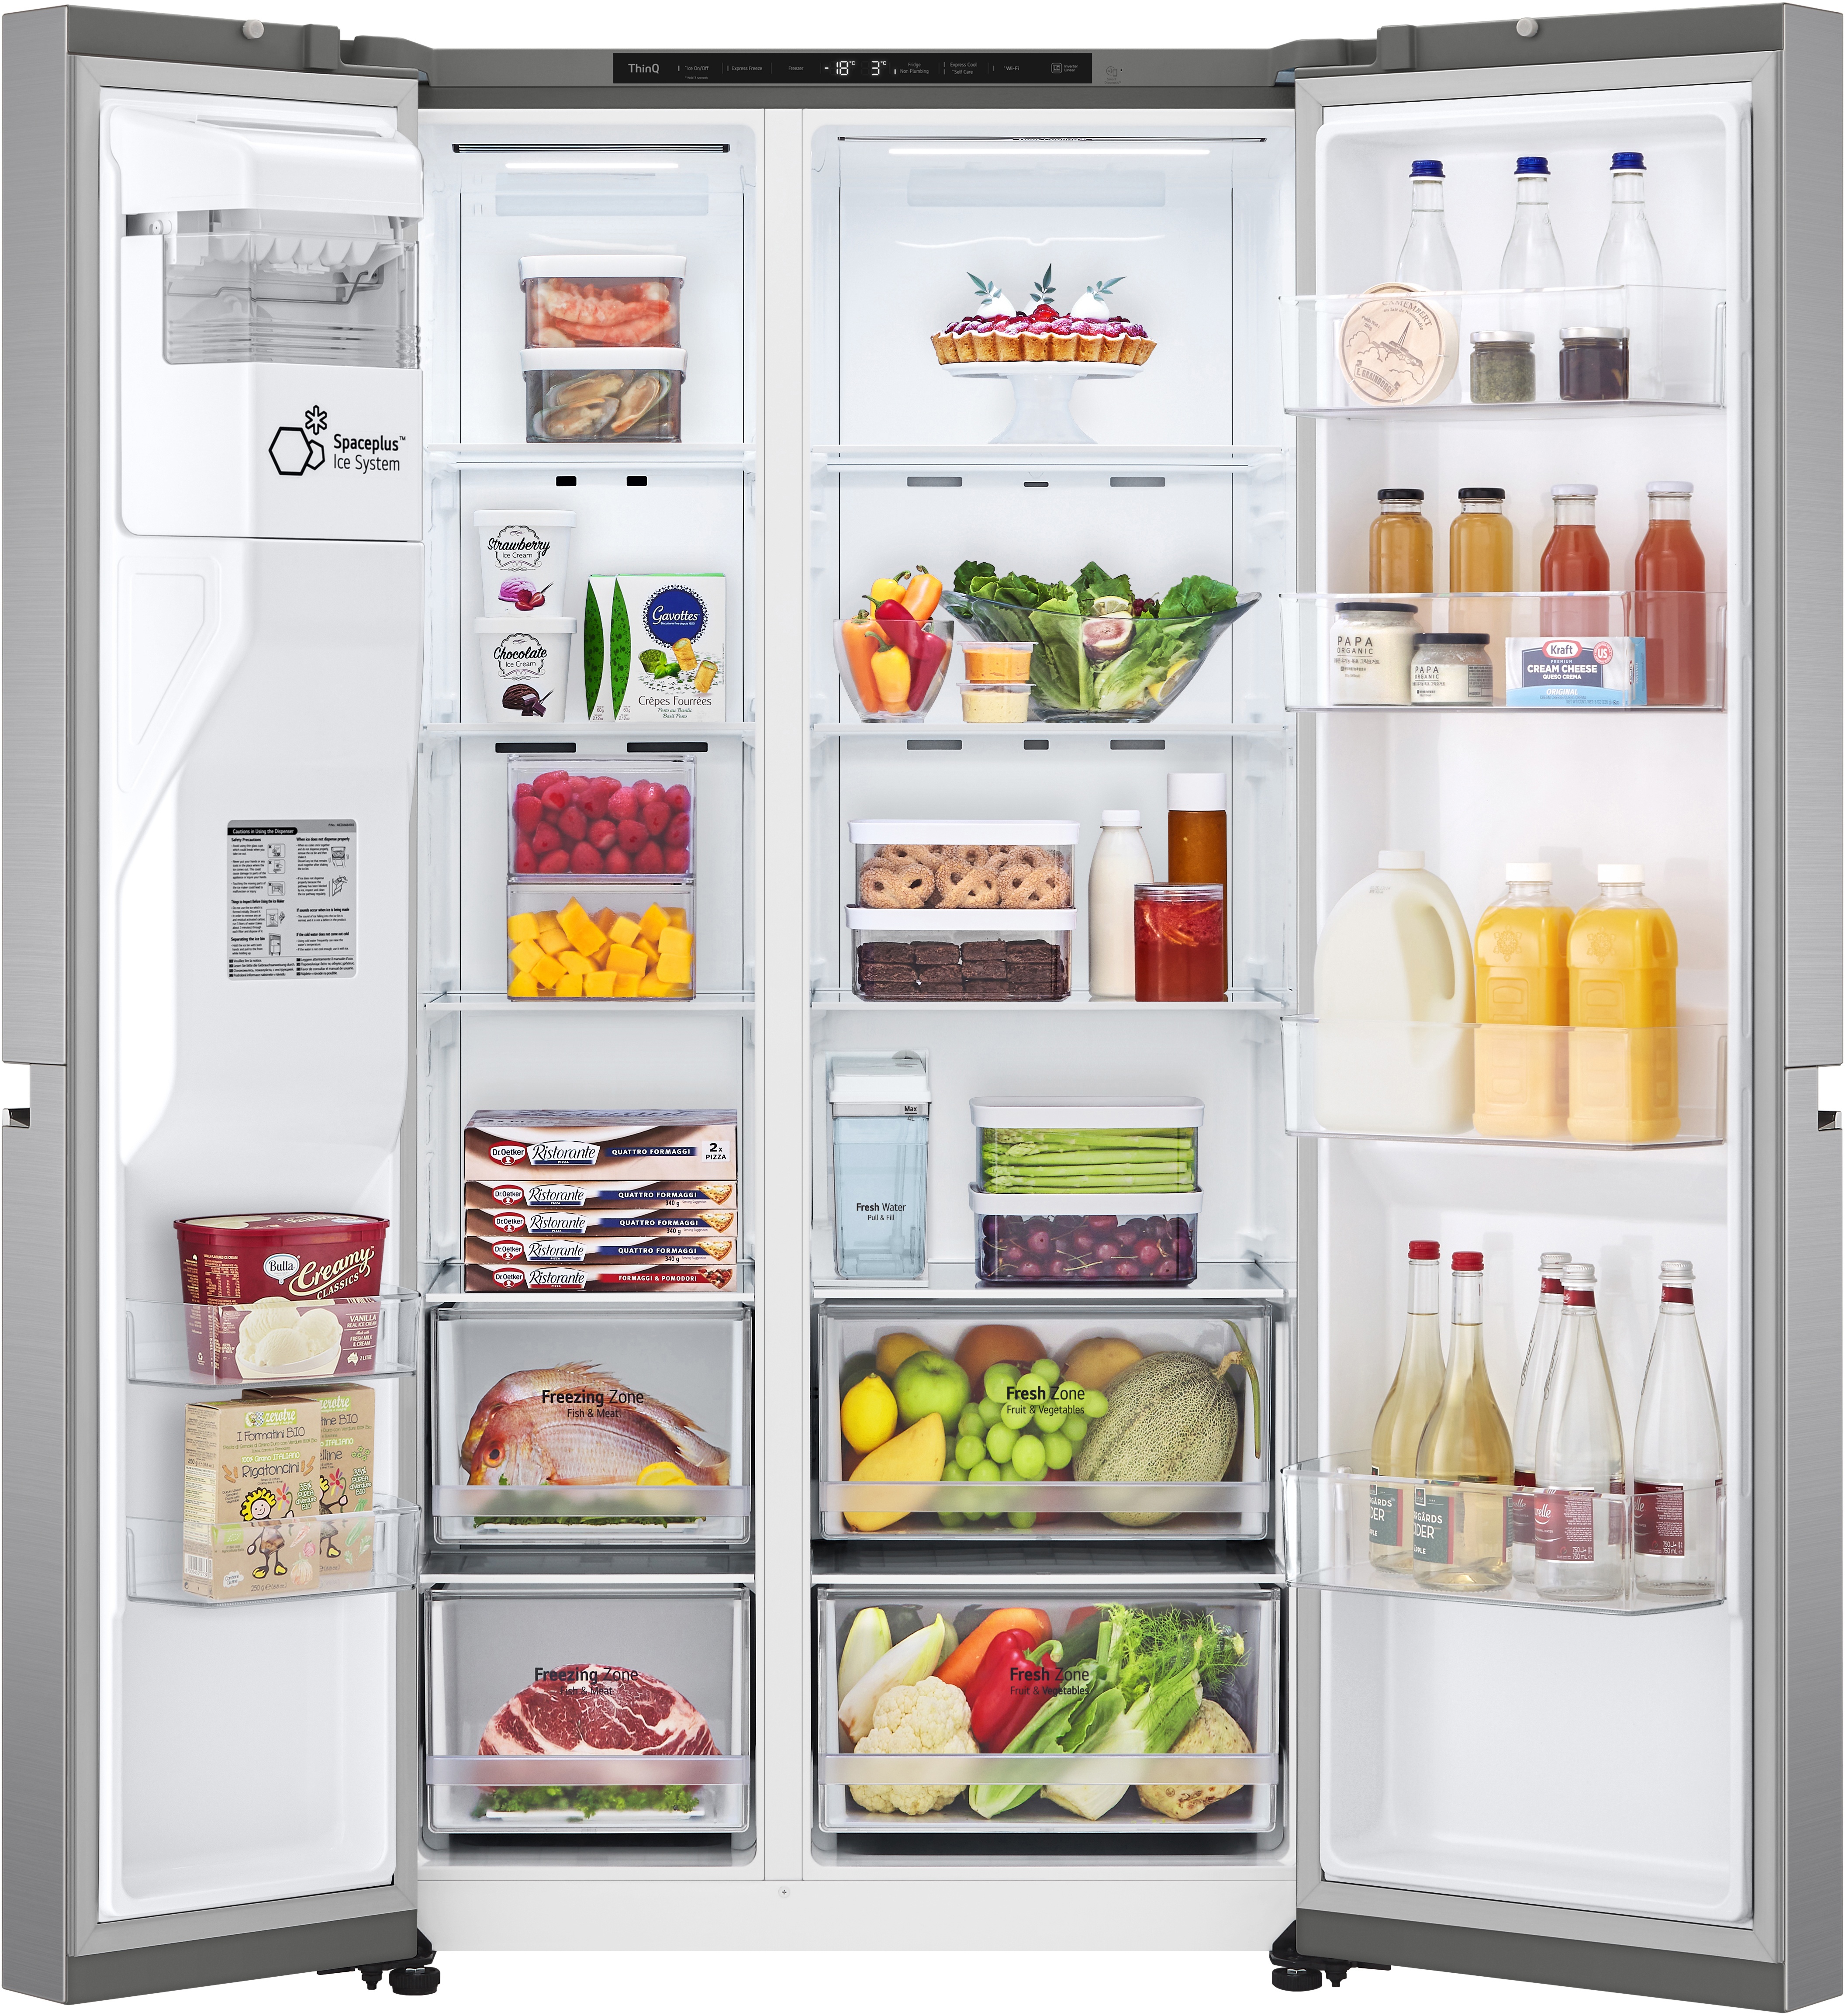 Kühlschrank LG GSLV71PZRC